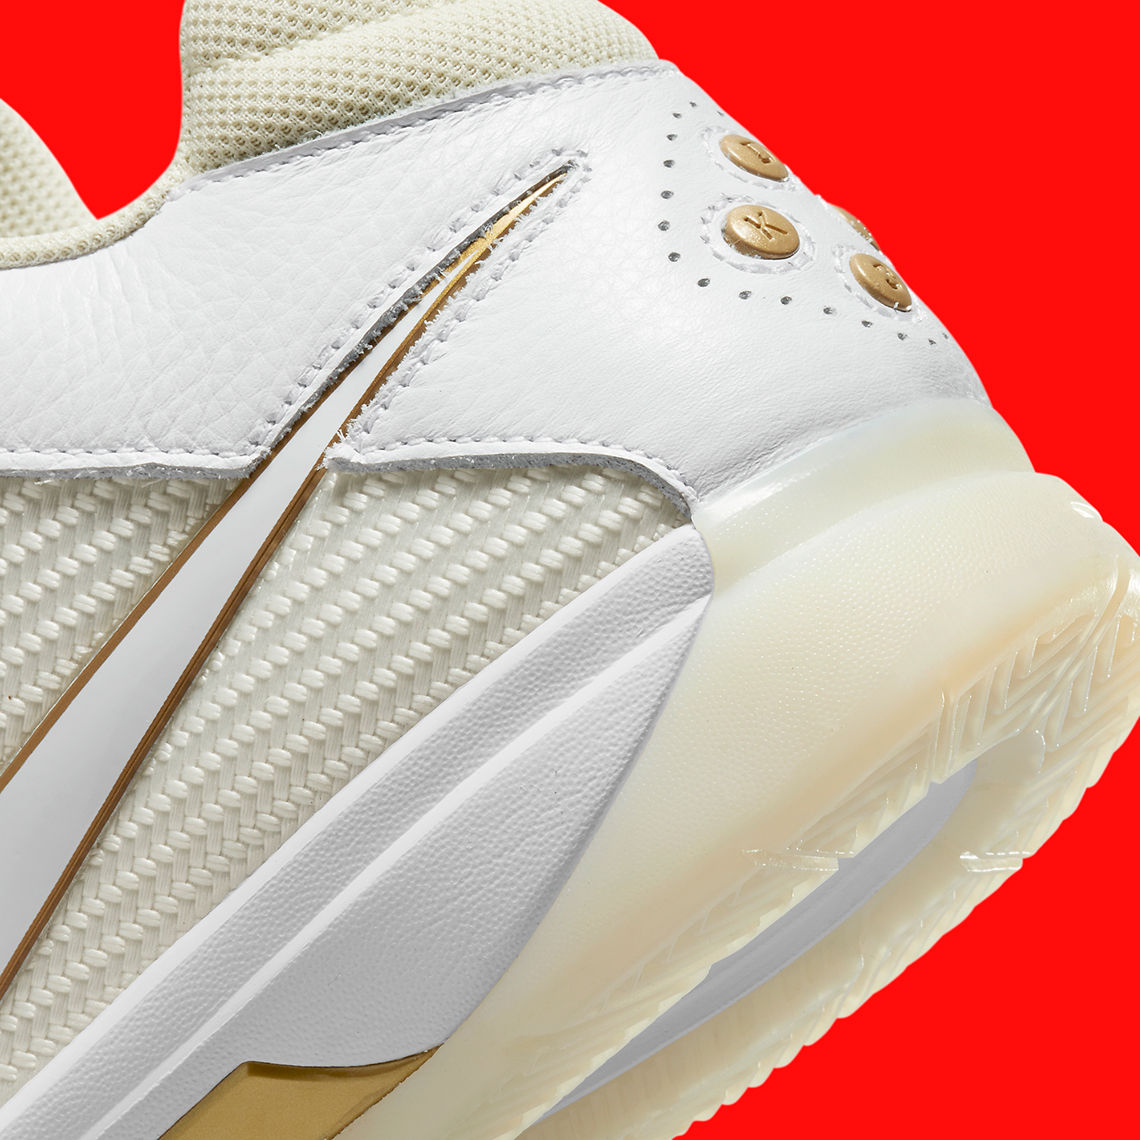 Nike Kd 3 White Gold Dz3009 100 3